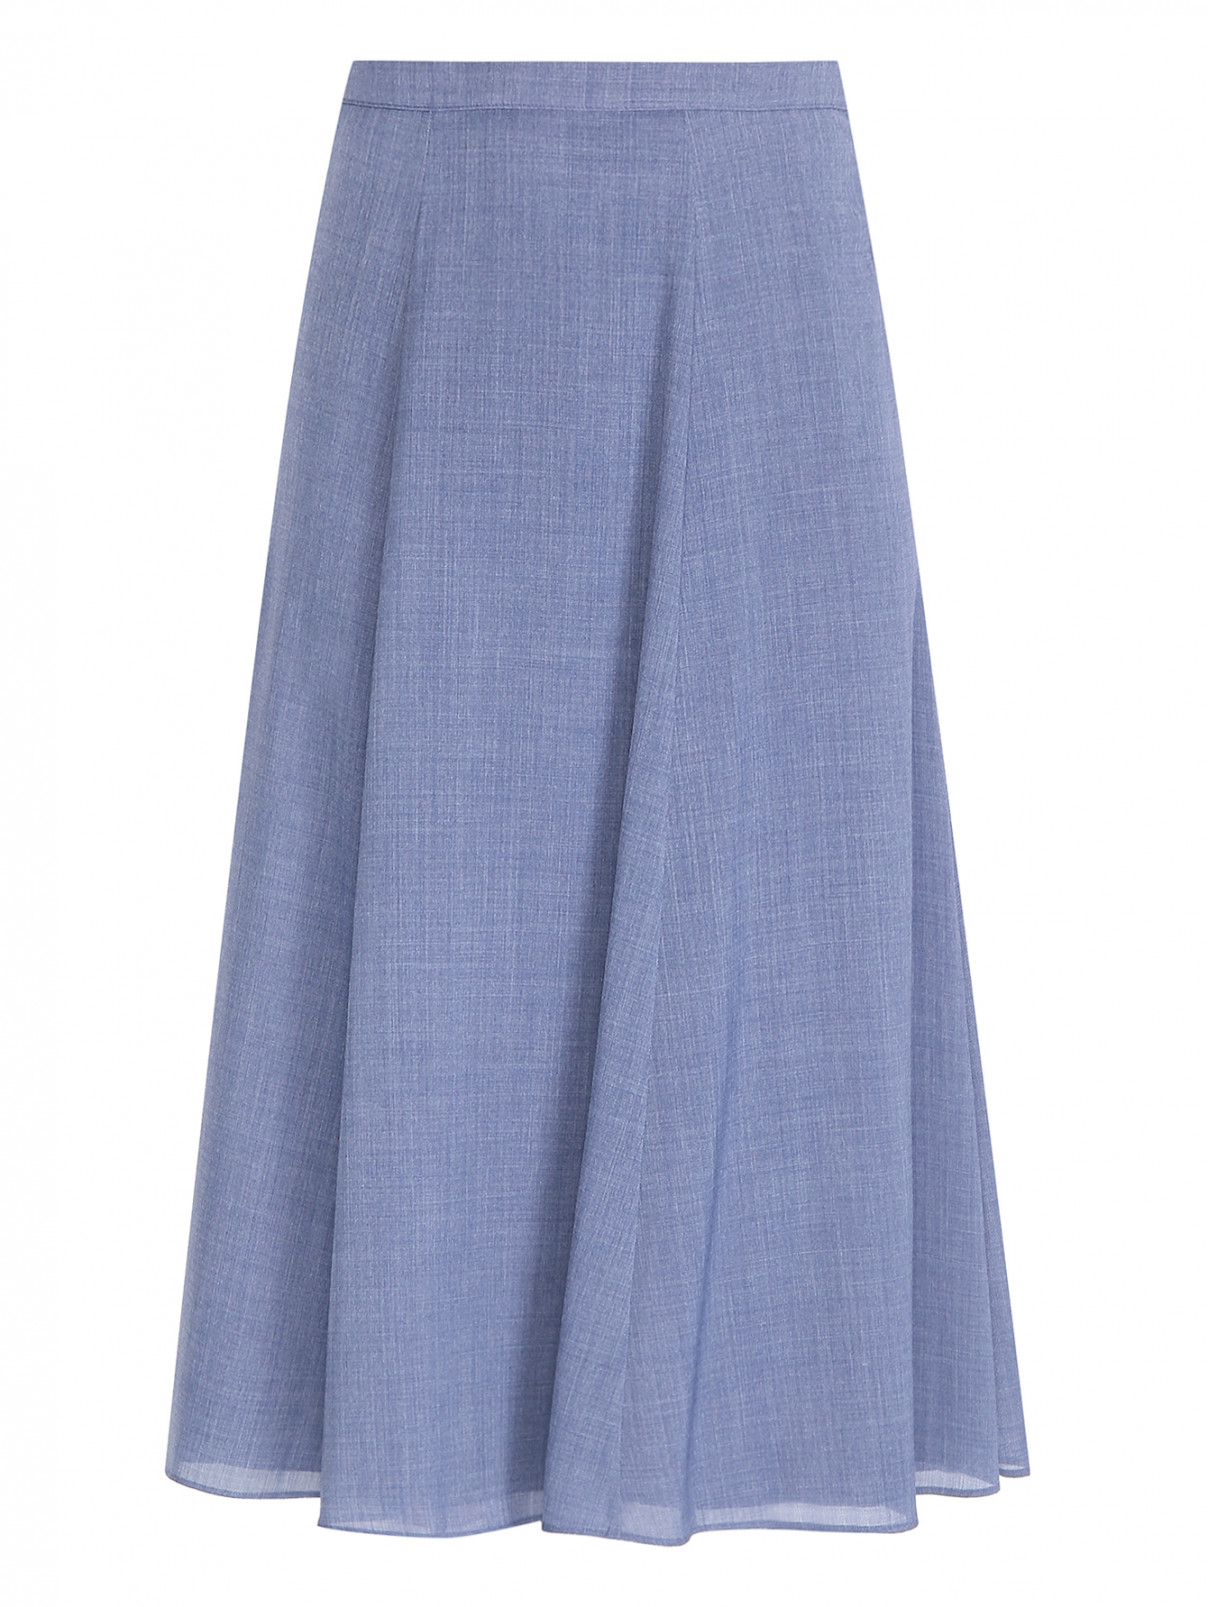 Расклешенная юбка из шерсти Marina Rinaldi  –  Общий вид  – Цвет:  Синий